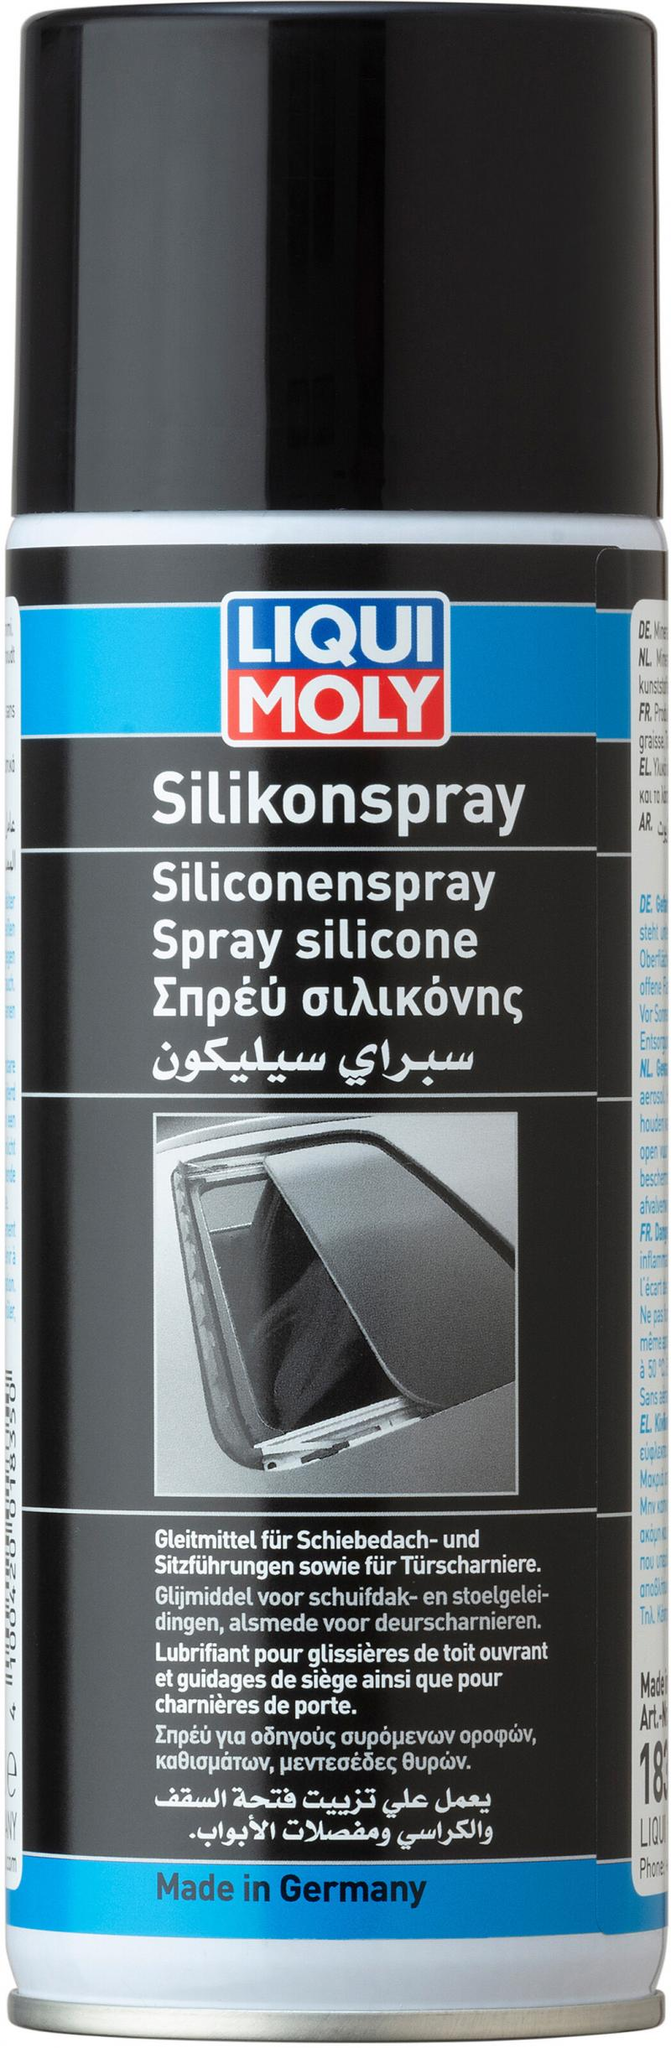 Silicona en Spray - liquimoly